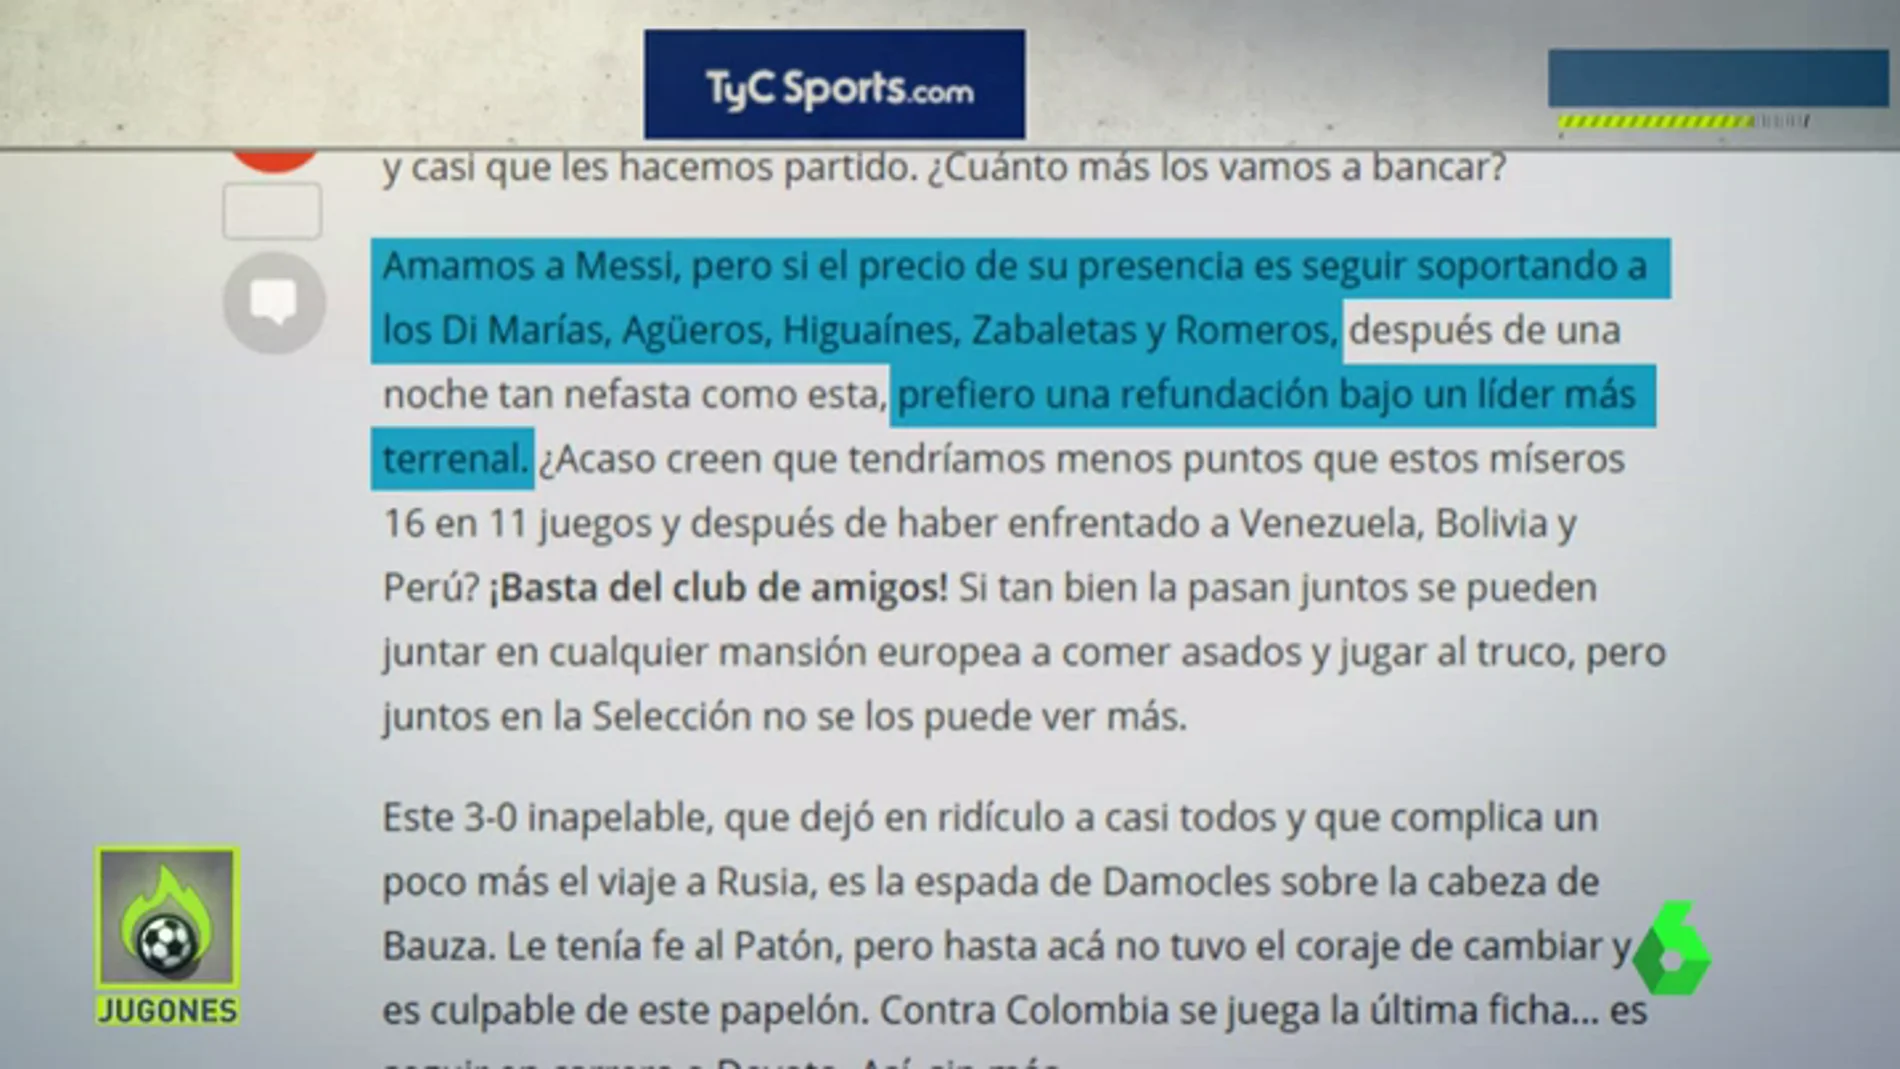 Frame 148.292259 de: La prensa argentina señala duramente a Leo: "Se arrastró. Terminemos con Messi y sus amigos"